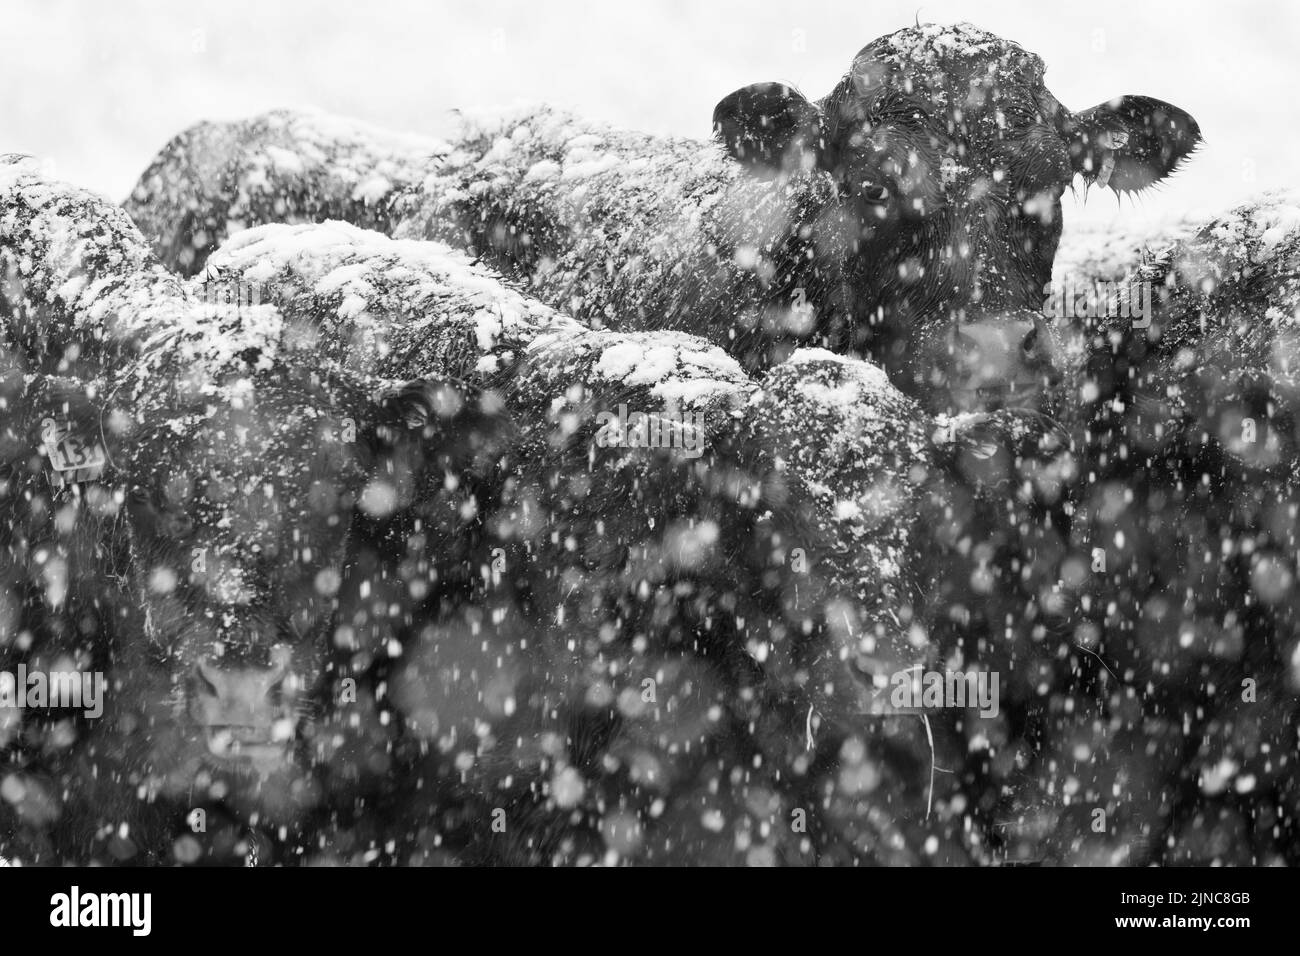 Angus mucche nella neve bianco e nero Foto Stock